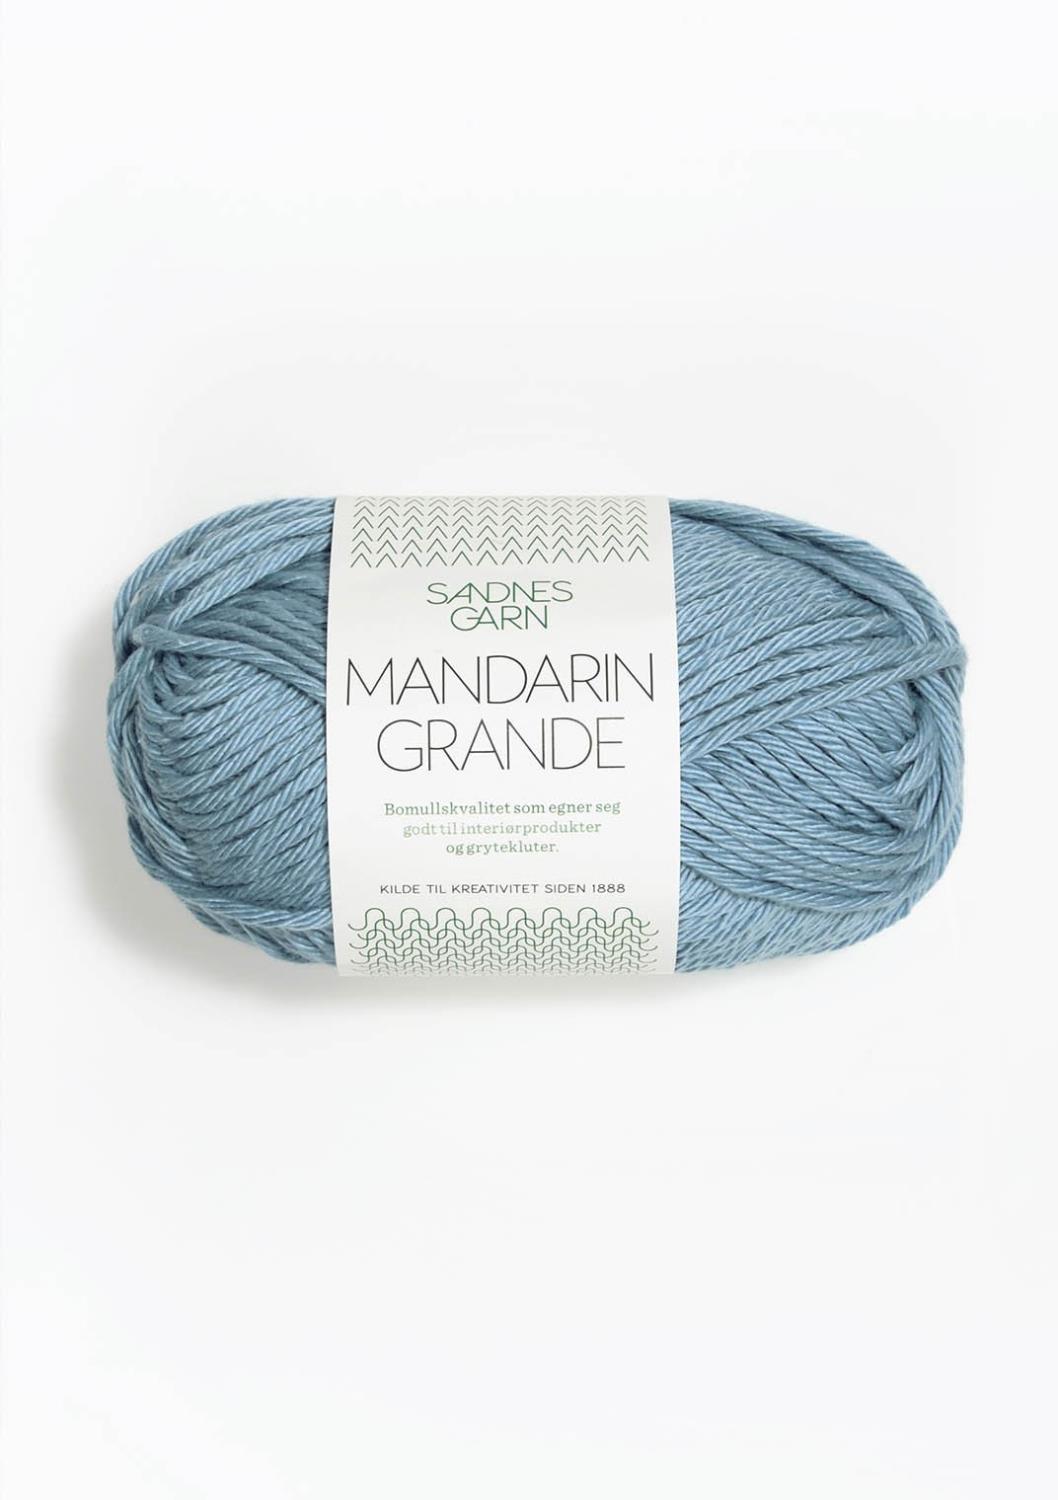 Mandarin Grande Sandnes 6314 - Skumringsblå